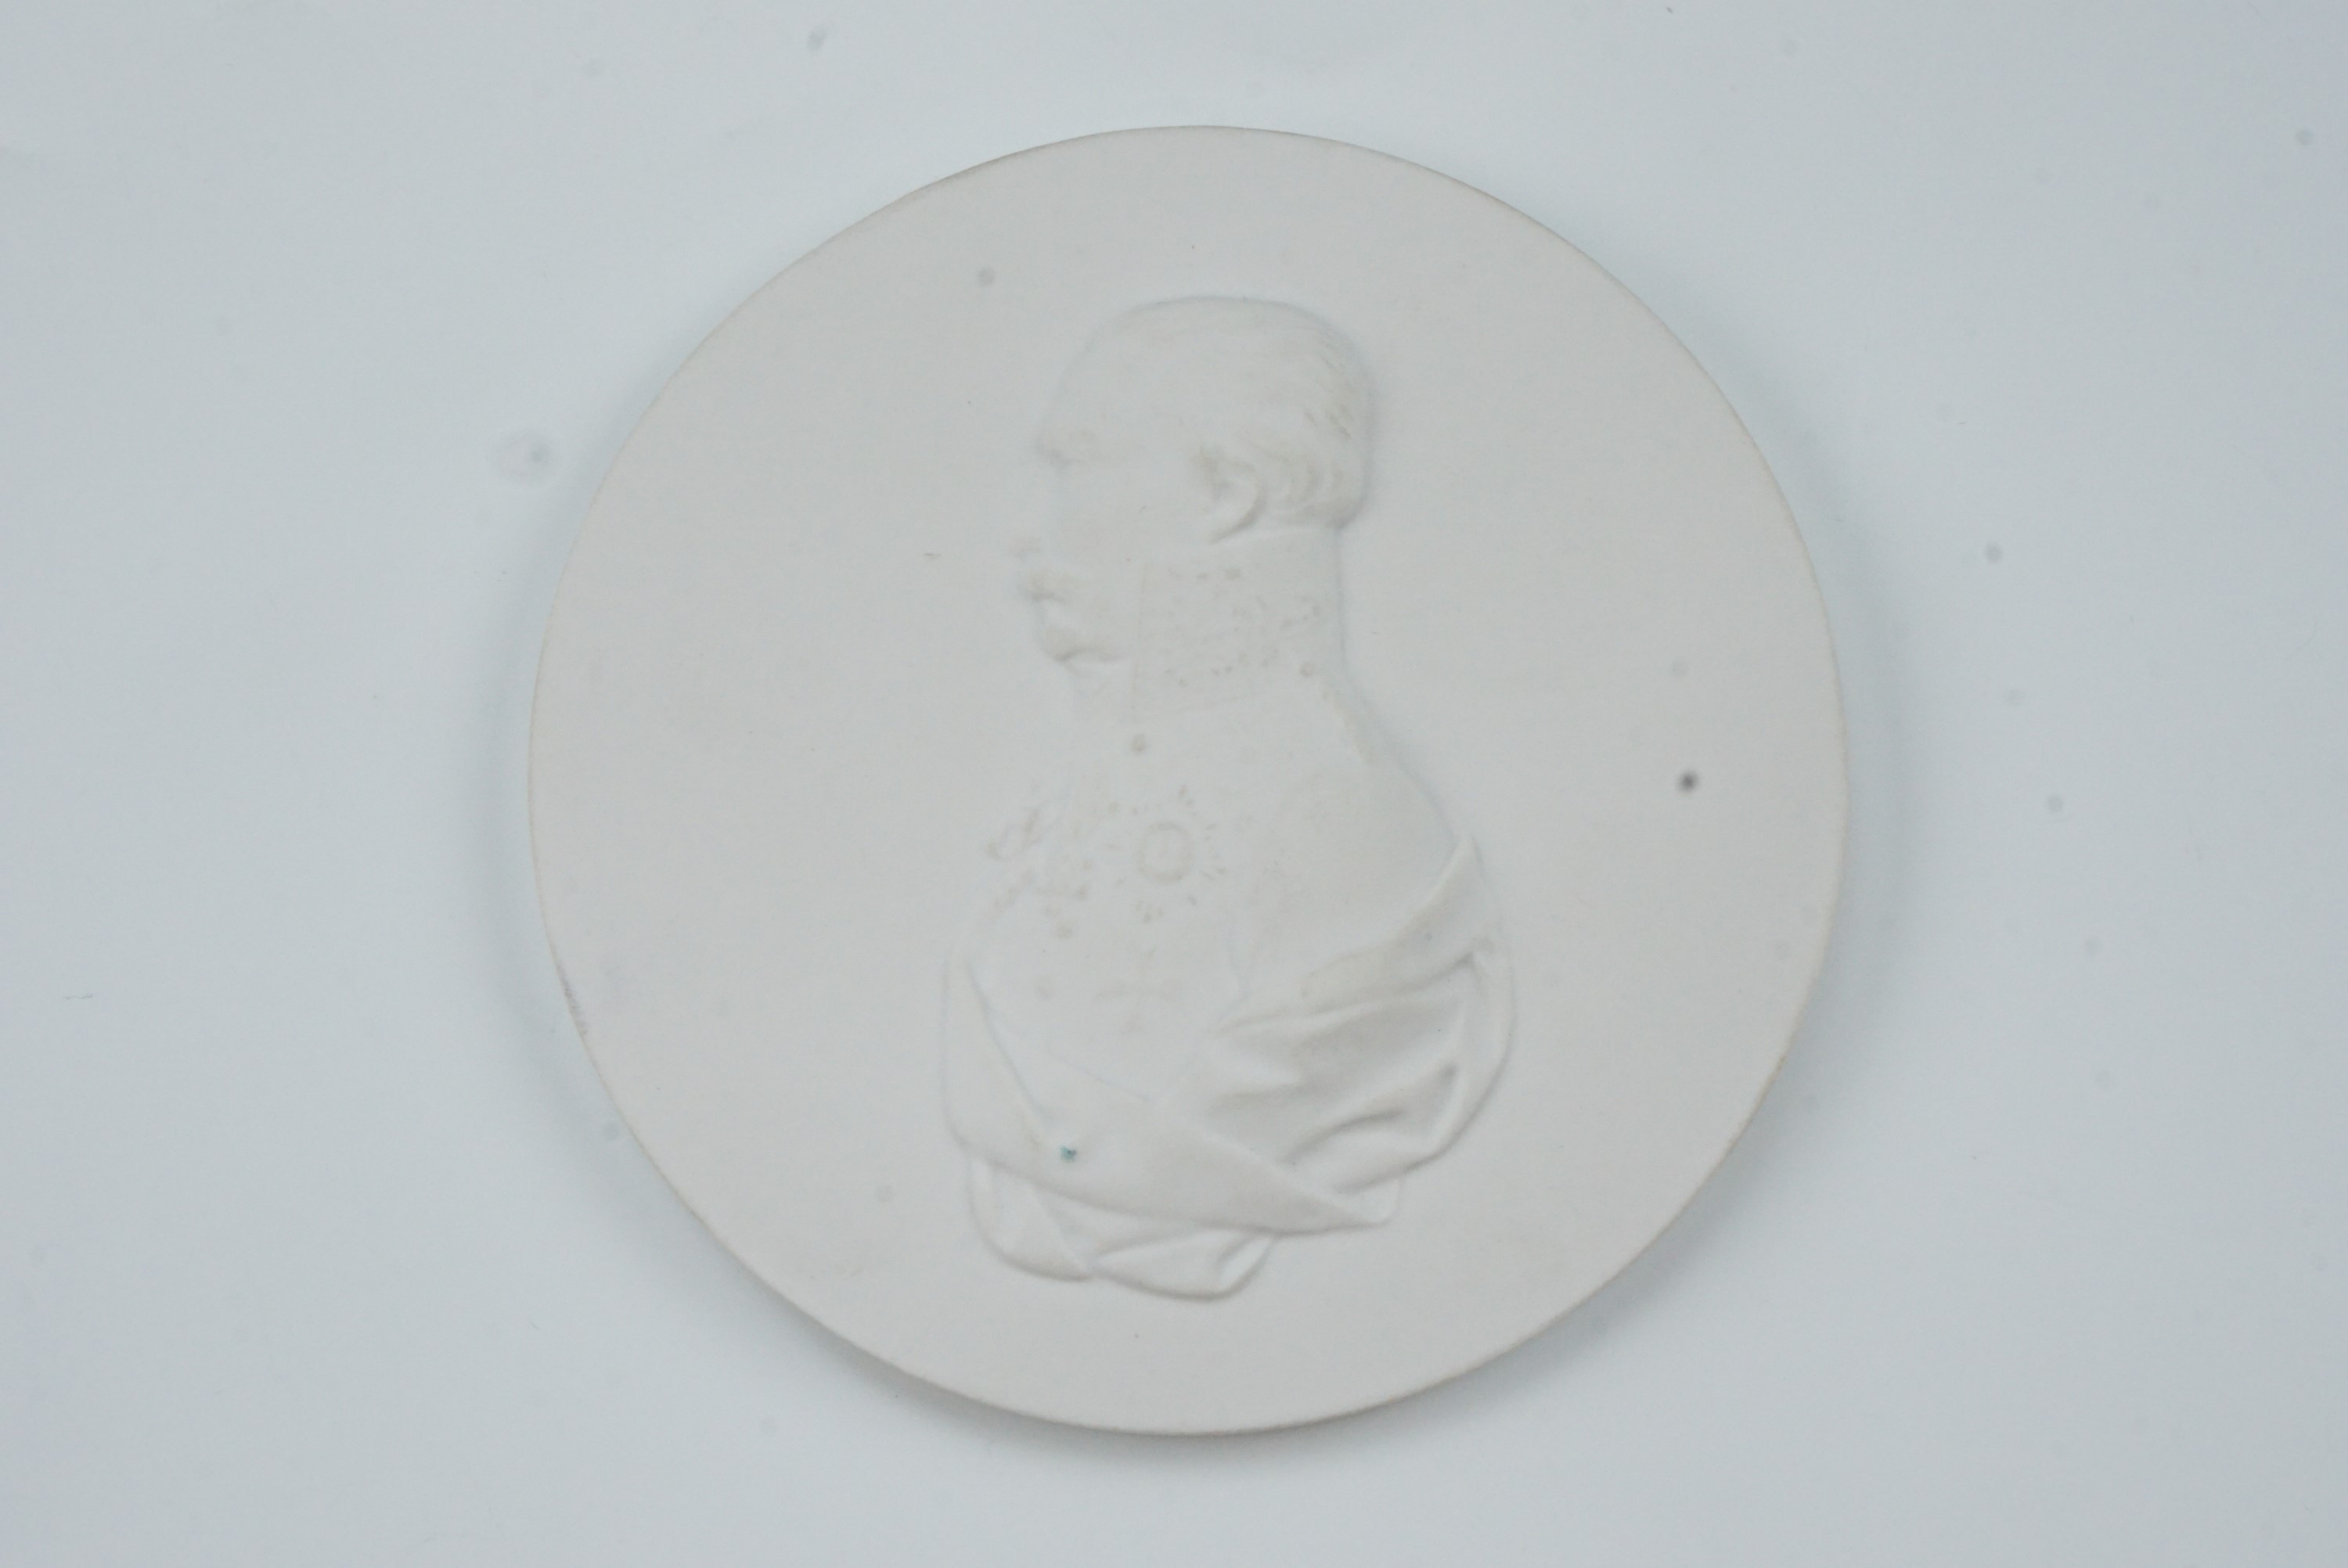 [ Waterloo ] A KPM Berlin bisque porcelain profile portrait plaque depicting the Napoleonic Wars